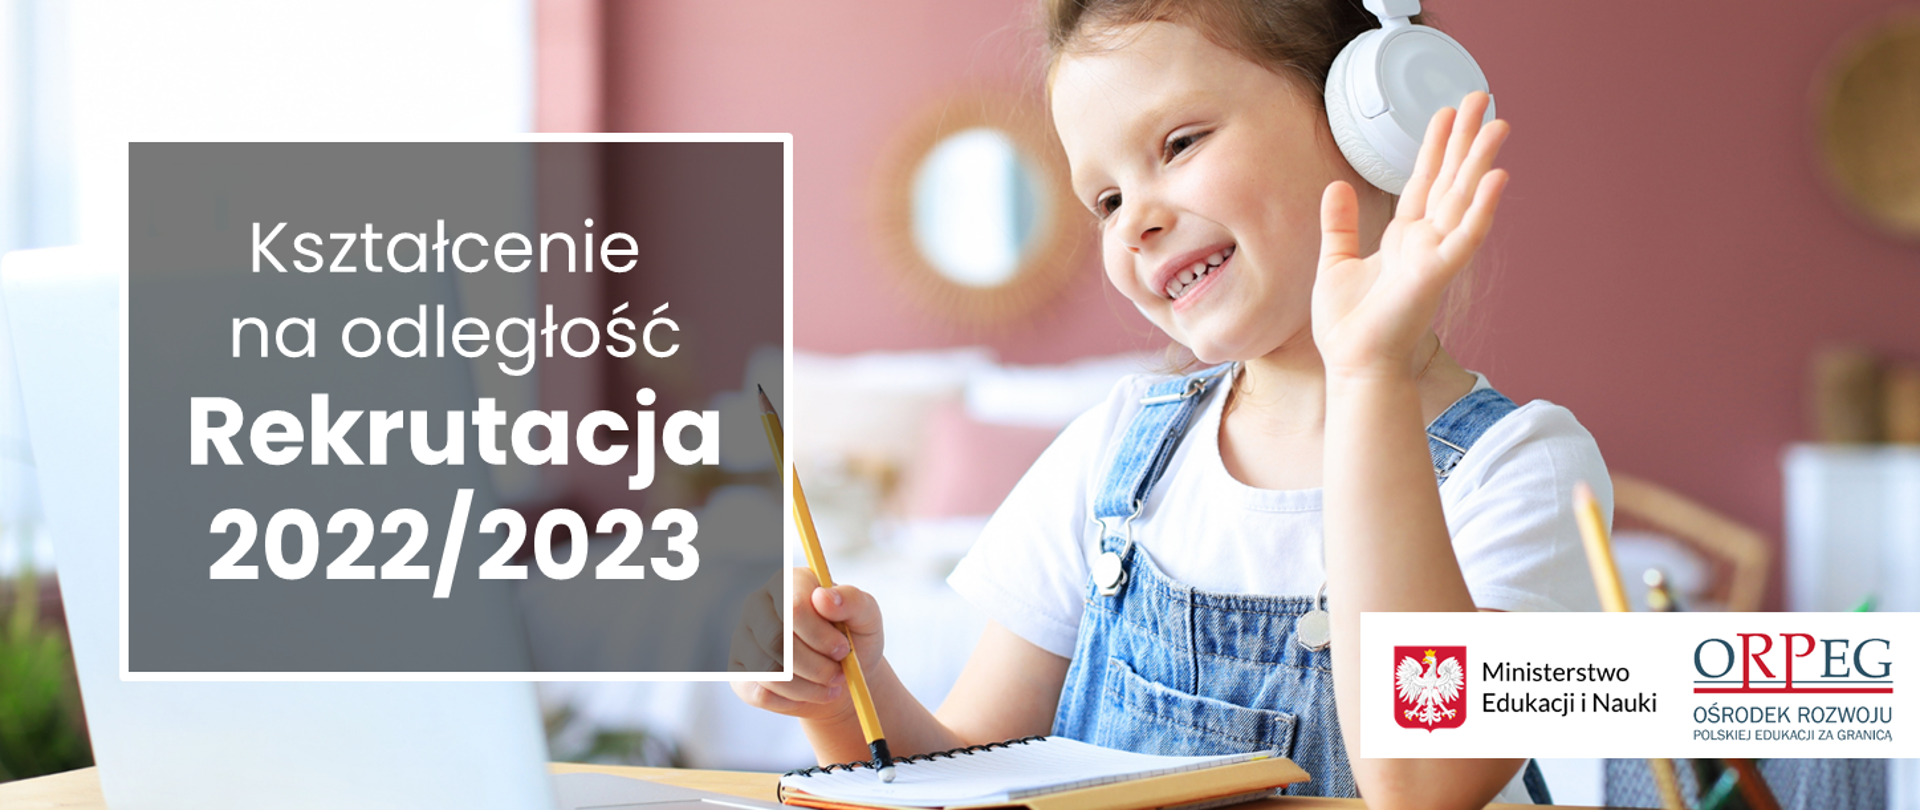 Wesołe dziecko trzymające ołówek nad zeszytem i napis Kształcenie na odległość - rekrutacja 2022/2023.